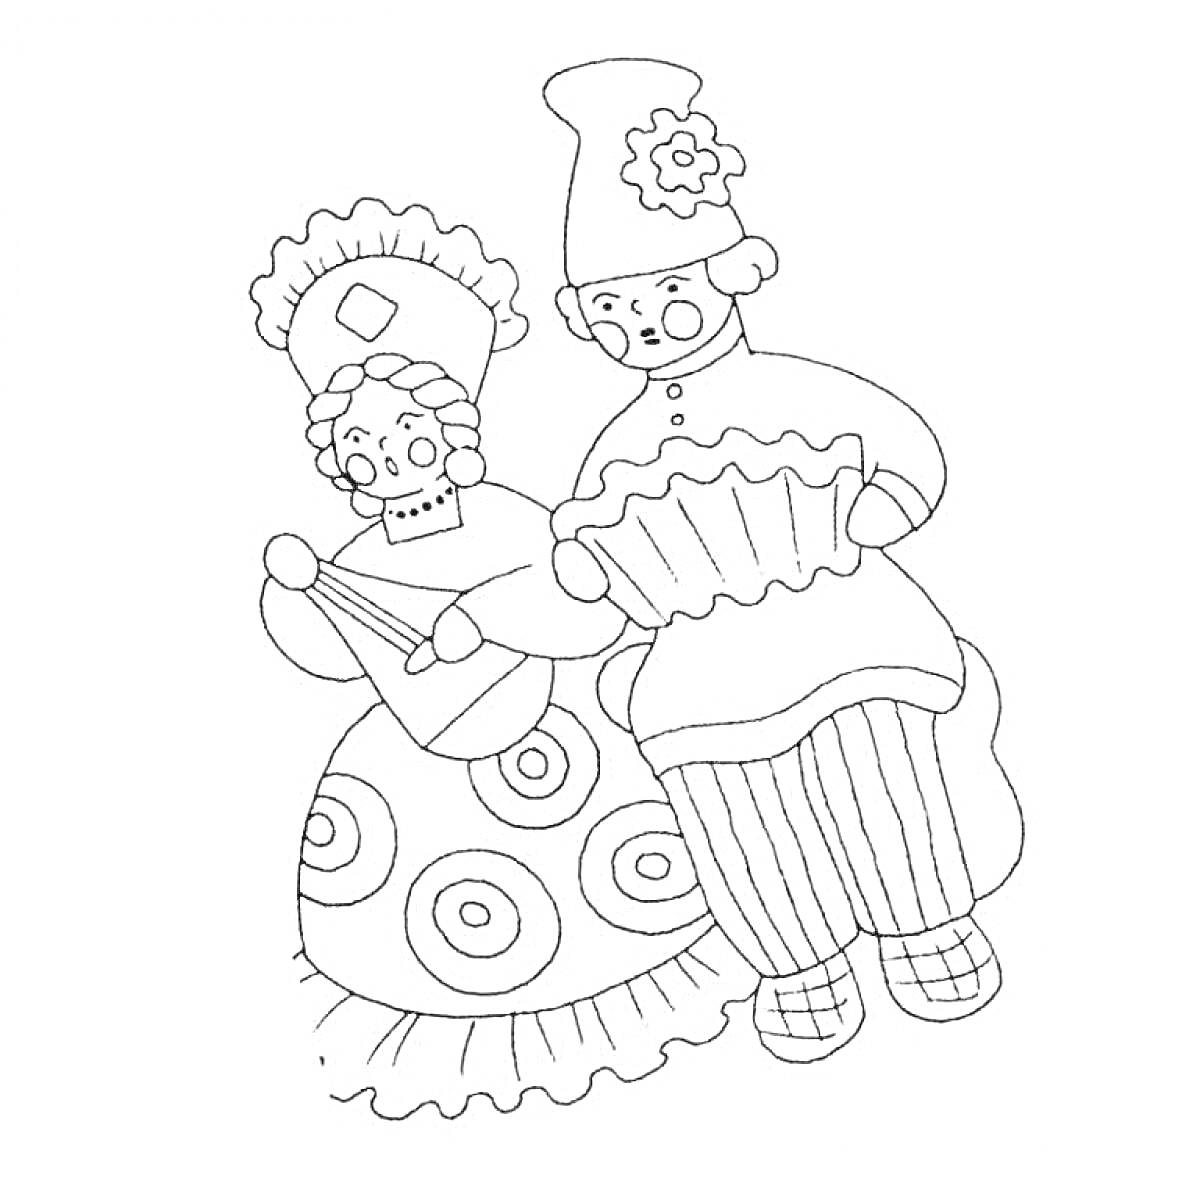 Раскраска Мужчина в шляпе и женщина в сидящих позах с узорами